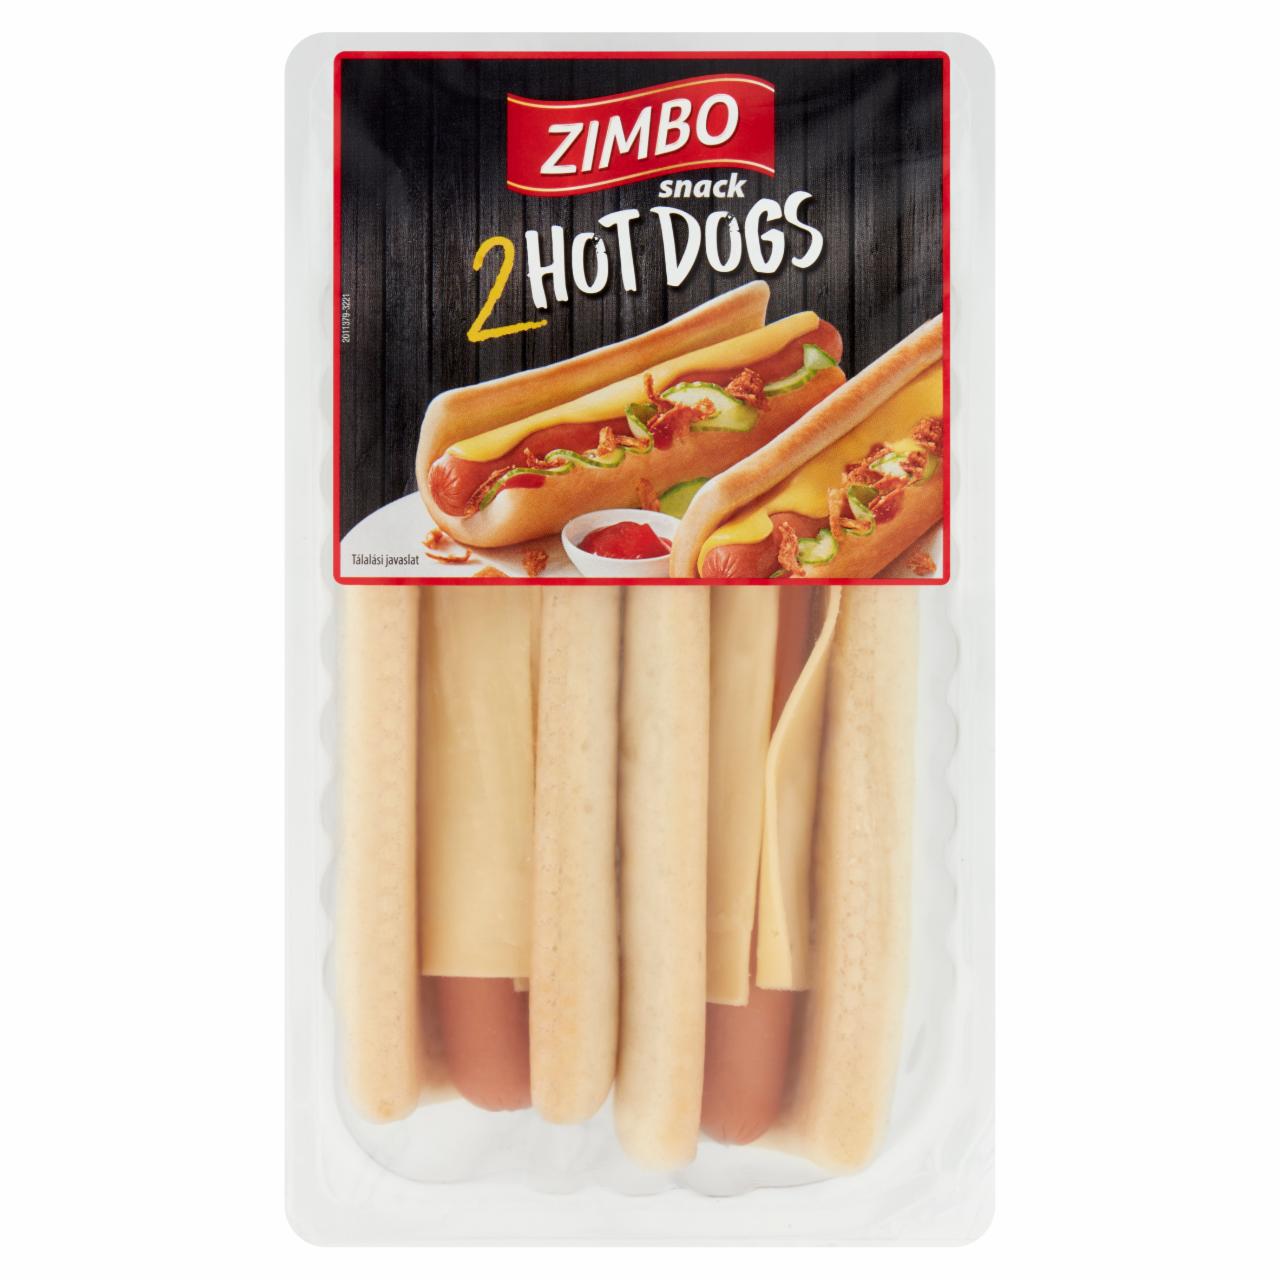 Képek - Zimbo Snack hot dog 2 db 200 g